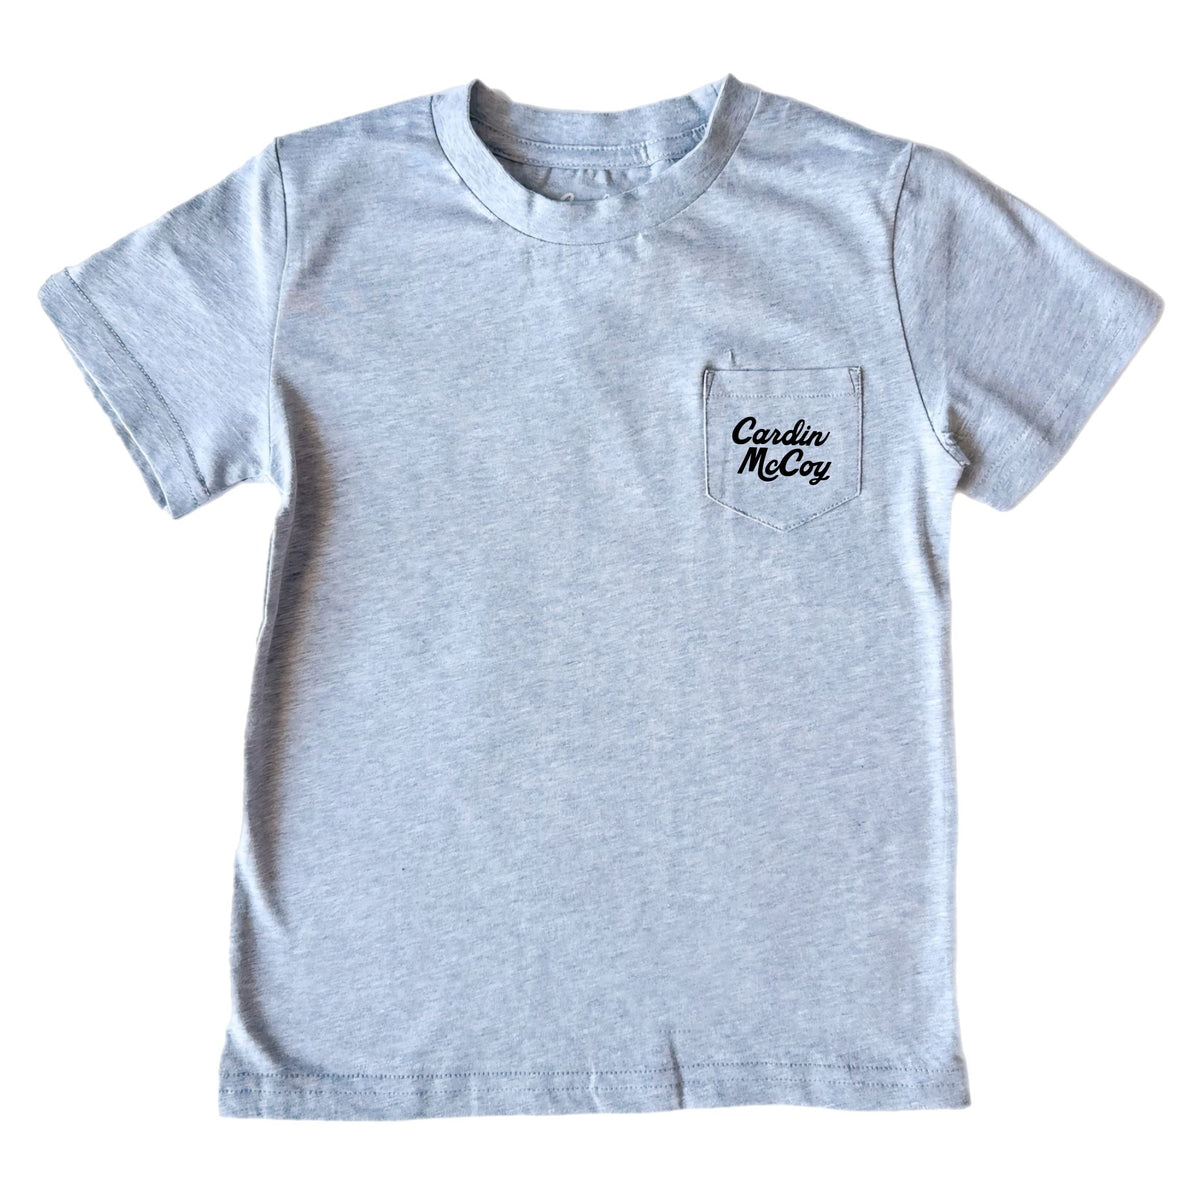 Kids' For God So Loved Short-Sleeve Tee Short Sleeve T-Shirt Cardin McCoy 